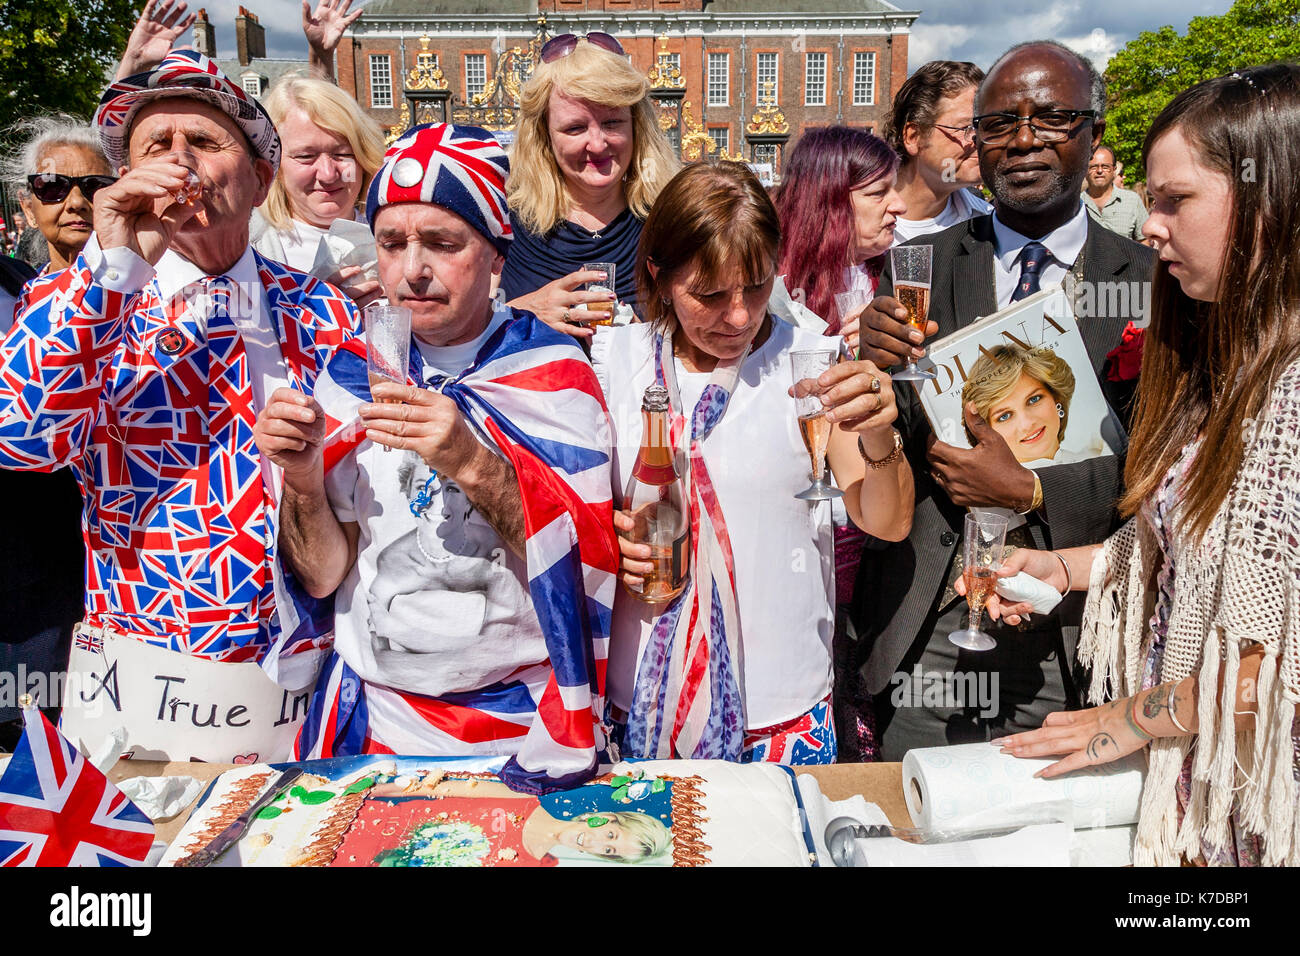 Anhänger der verstorbenen Prinzessin Diana Toast Ihr Gedächtnis mit Gläser Champagner Am 20. Jahrestag ihres Todes, Kensington Palace, London, Großbritannien Stockfoto